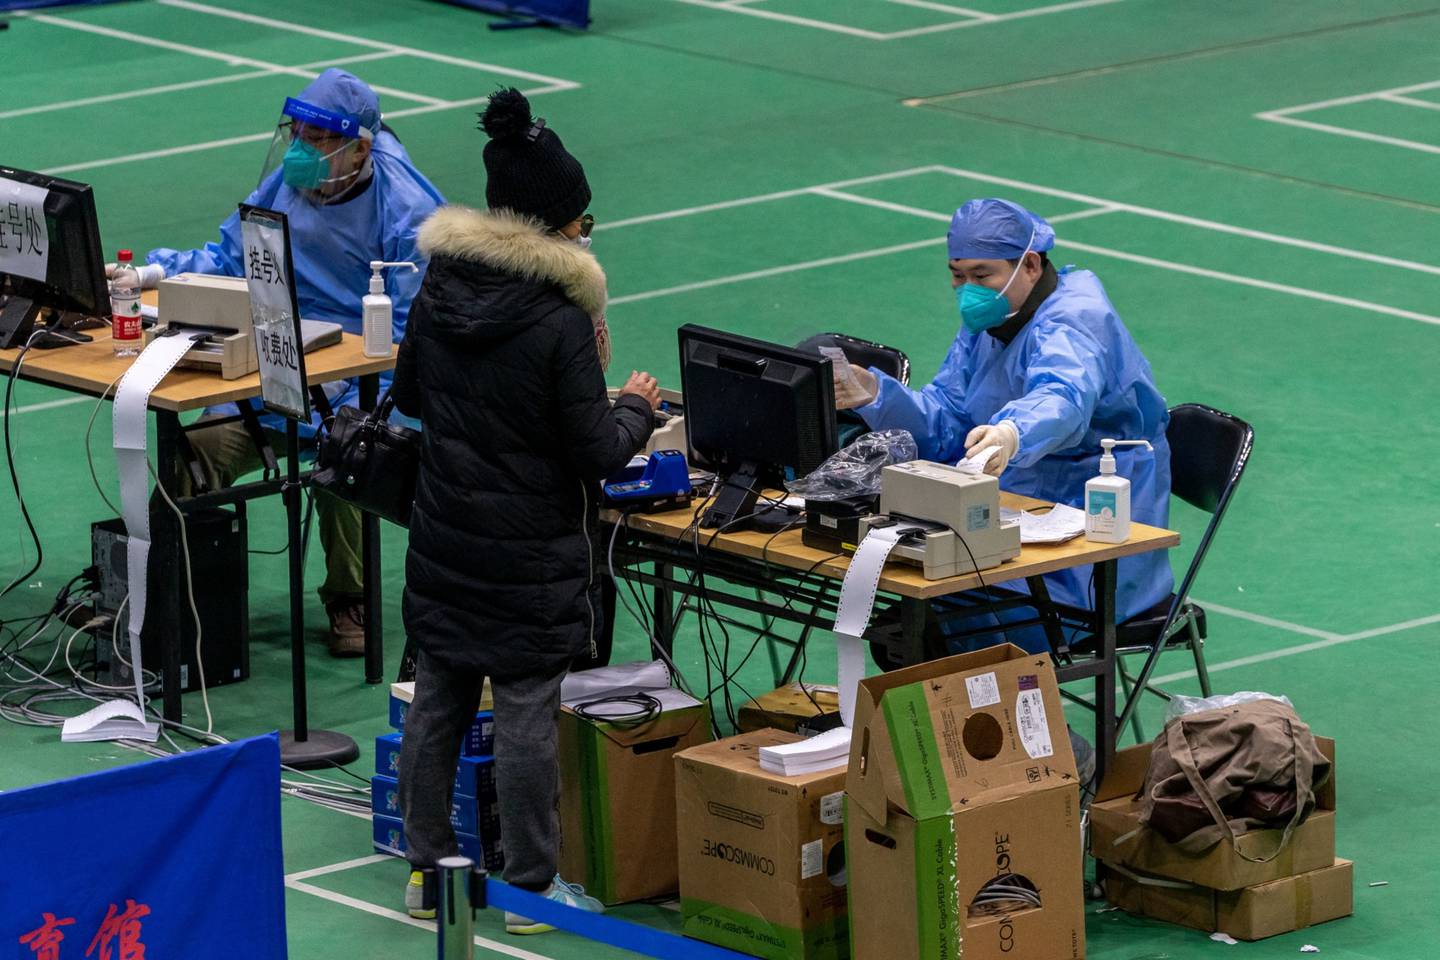 Una persona en una clínica temporal contra la fiebre instalada en un centro deportivo de Pekín, China, el lunes 19 de diciembre de 2022.